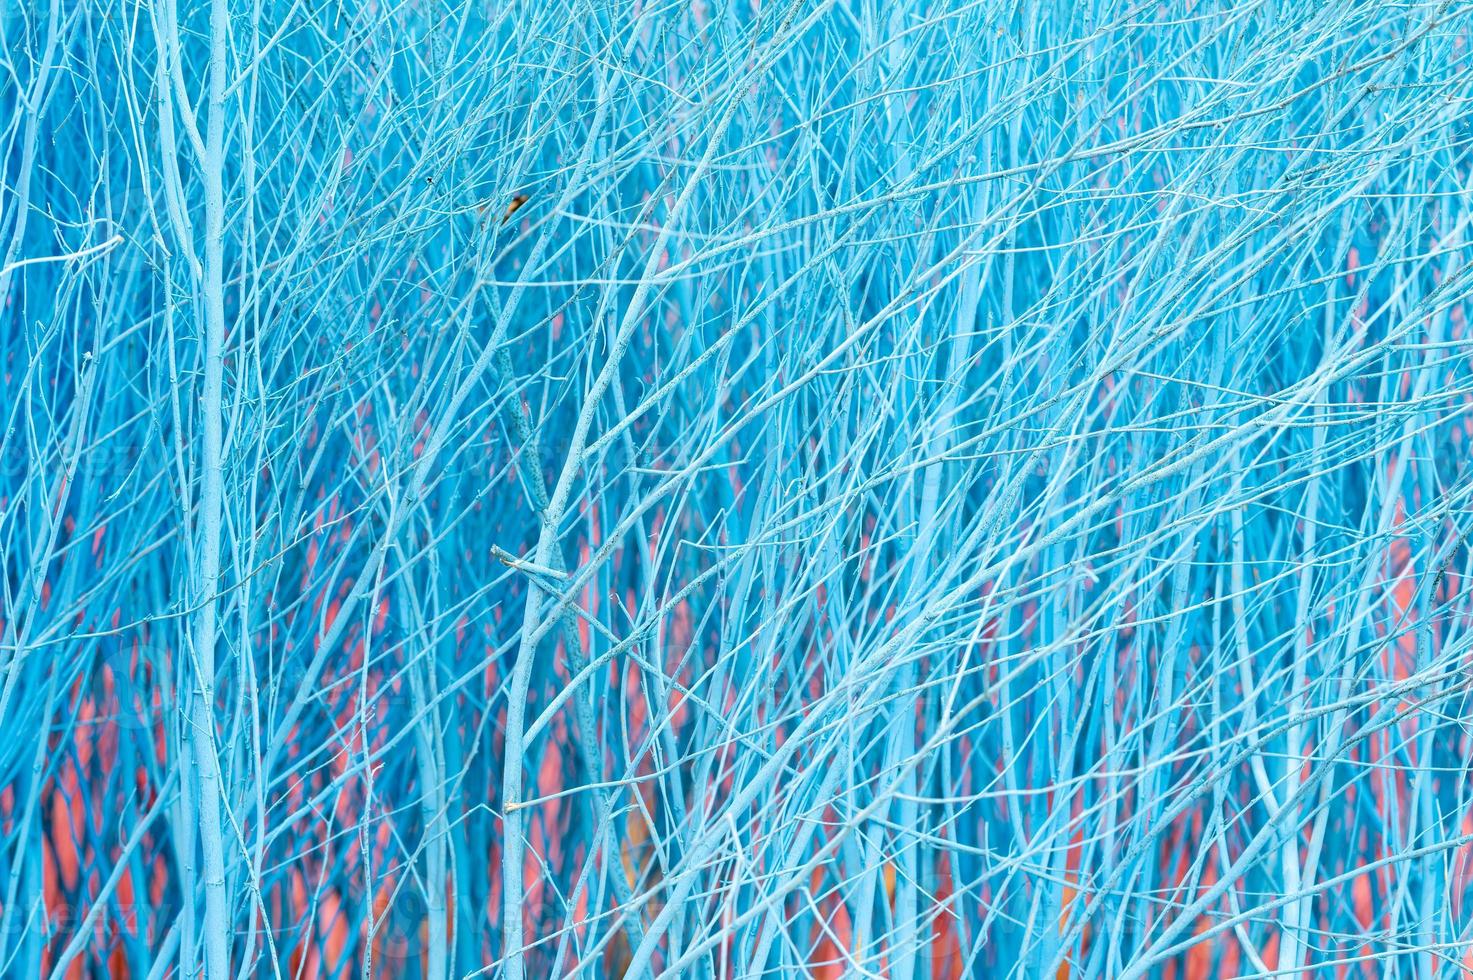 himmelblaue Farbe des Hintergrunds der kleinen trockenen Zweige foto